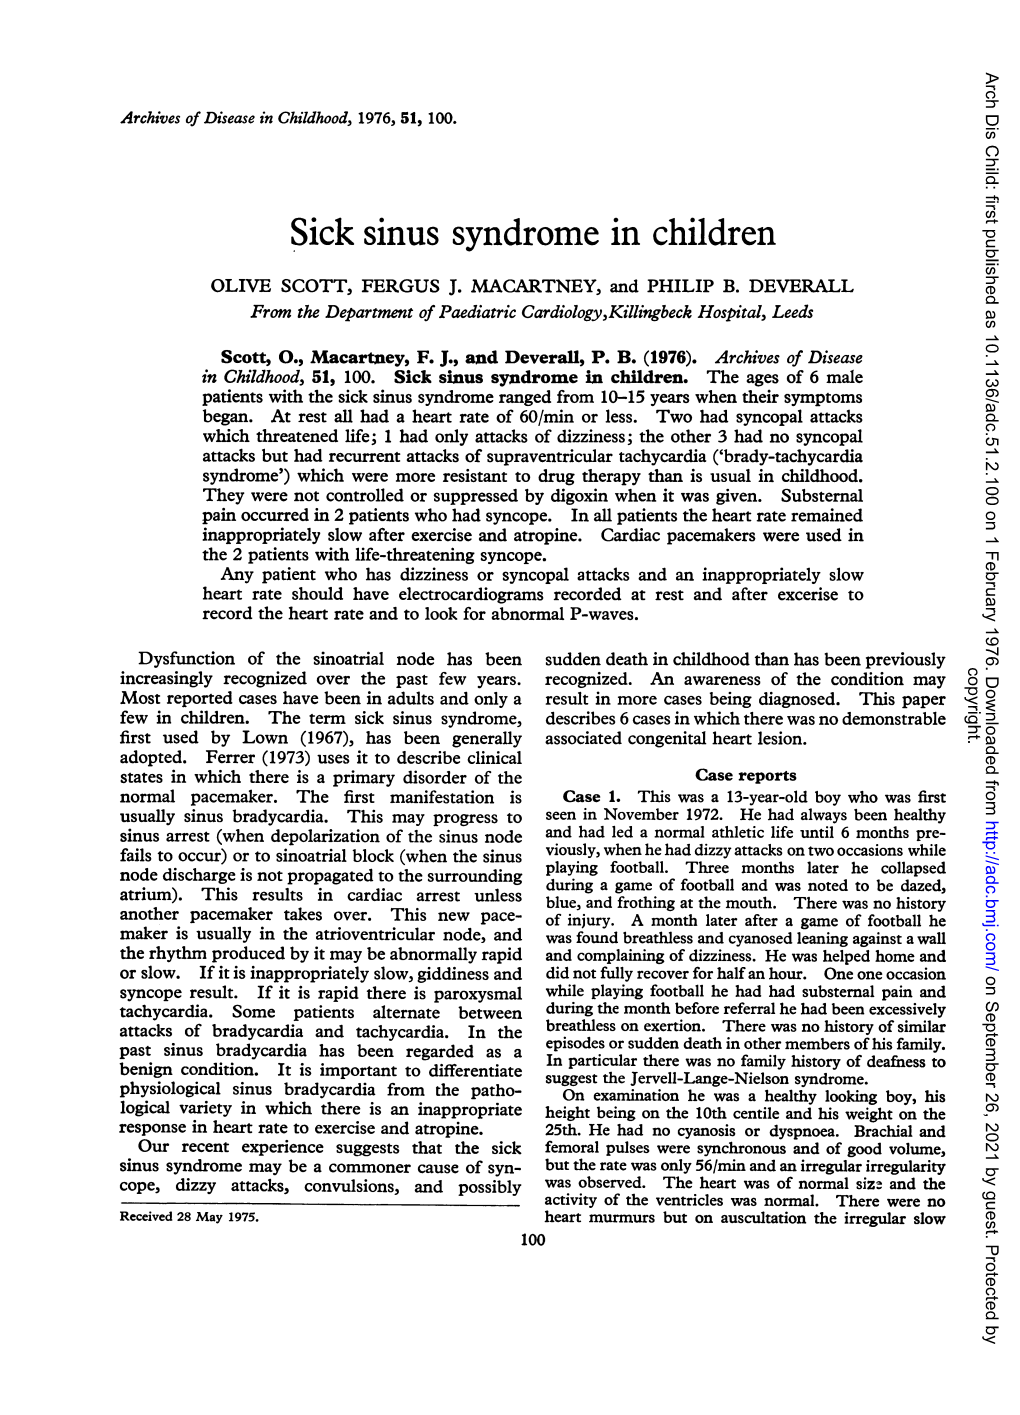 Sick Sinus Syndrome in Children